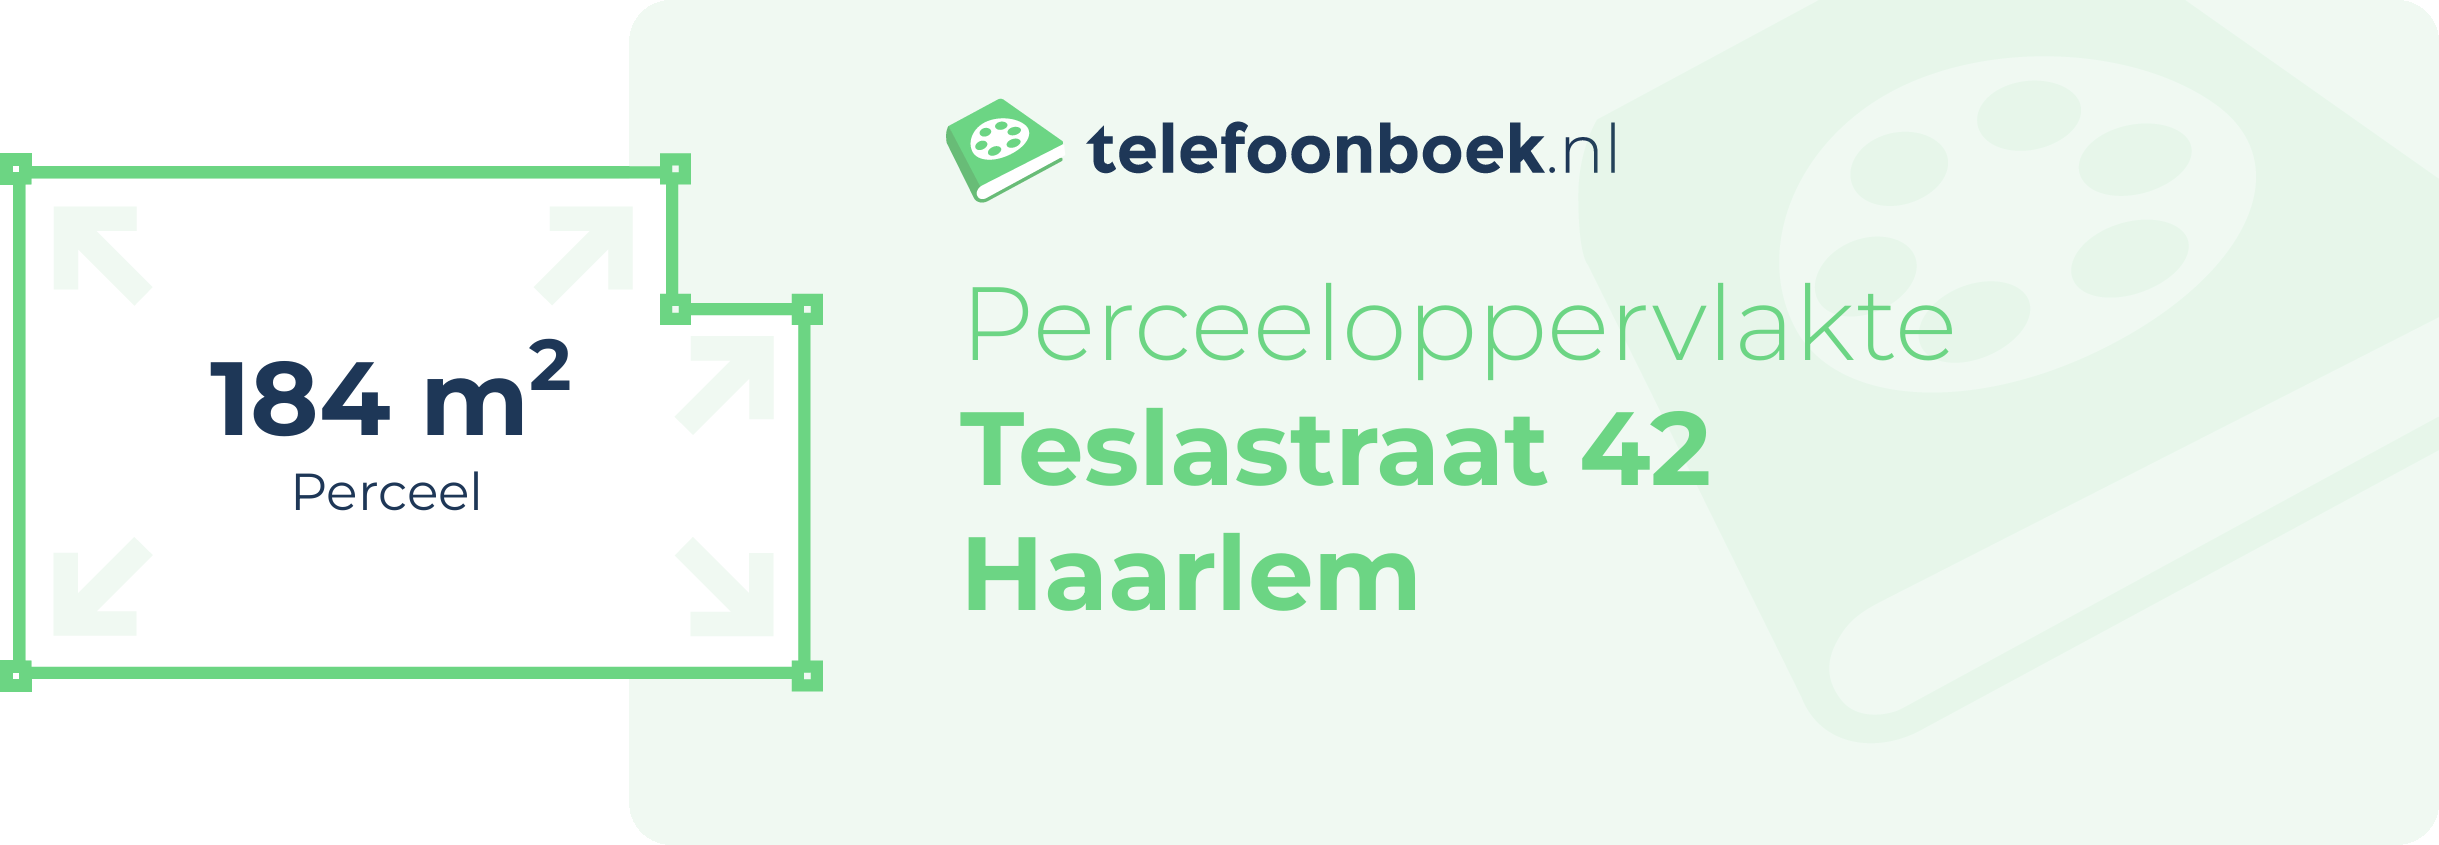 Perceeloppervlakte Teslastraat 42 Haarlem